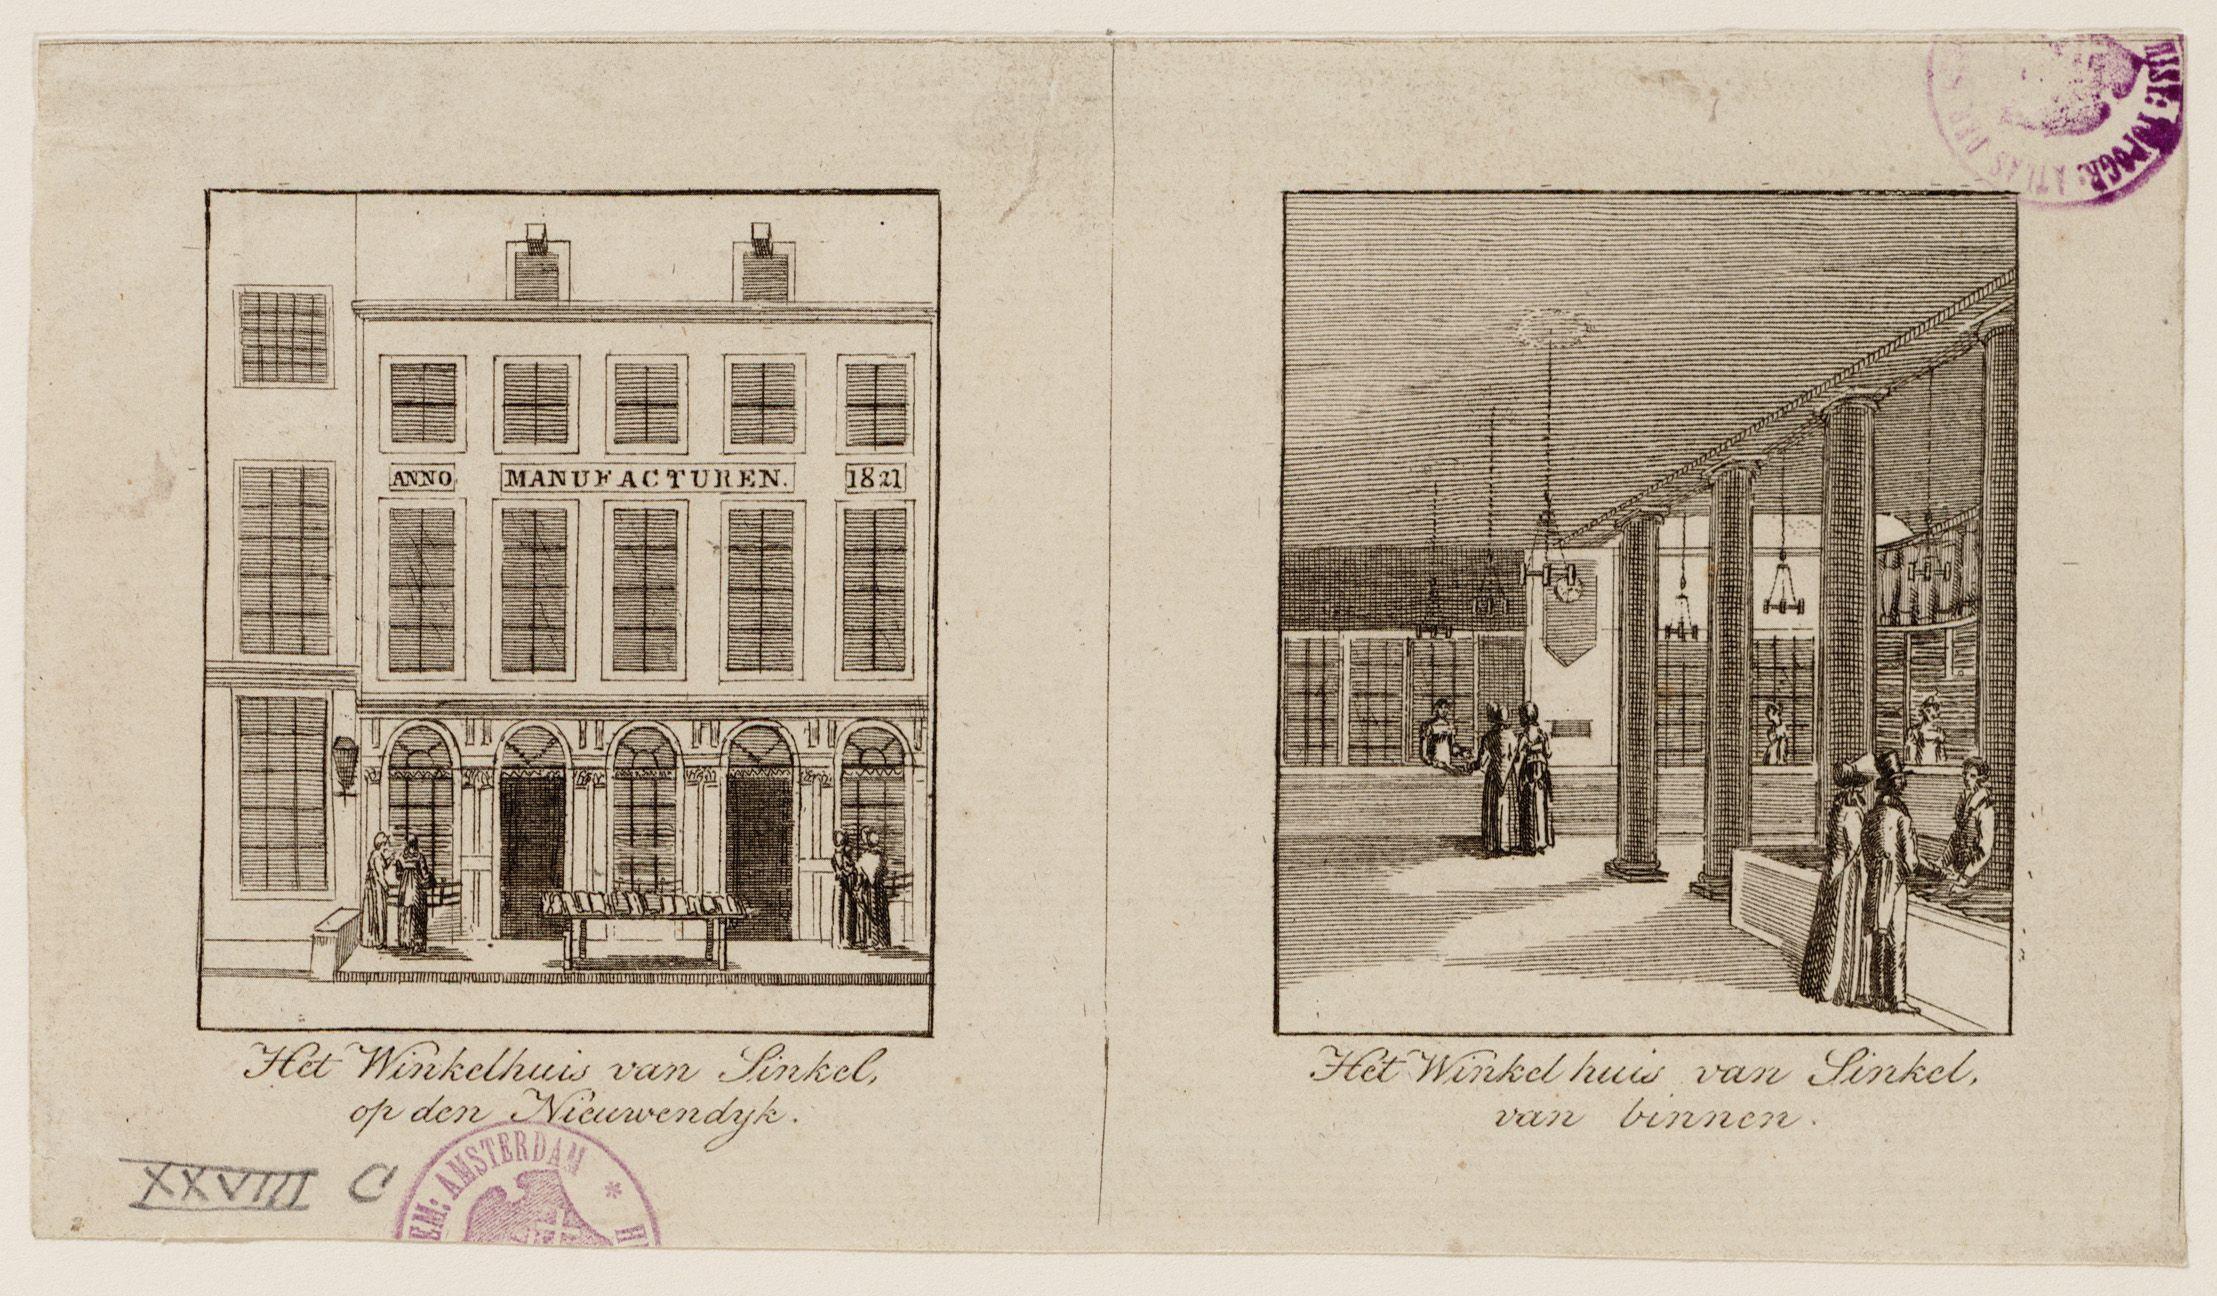 Het Winkelhuis van Sinkel op de Nieuwendijk, circa 1830.